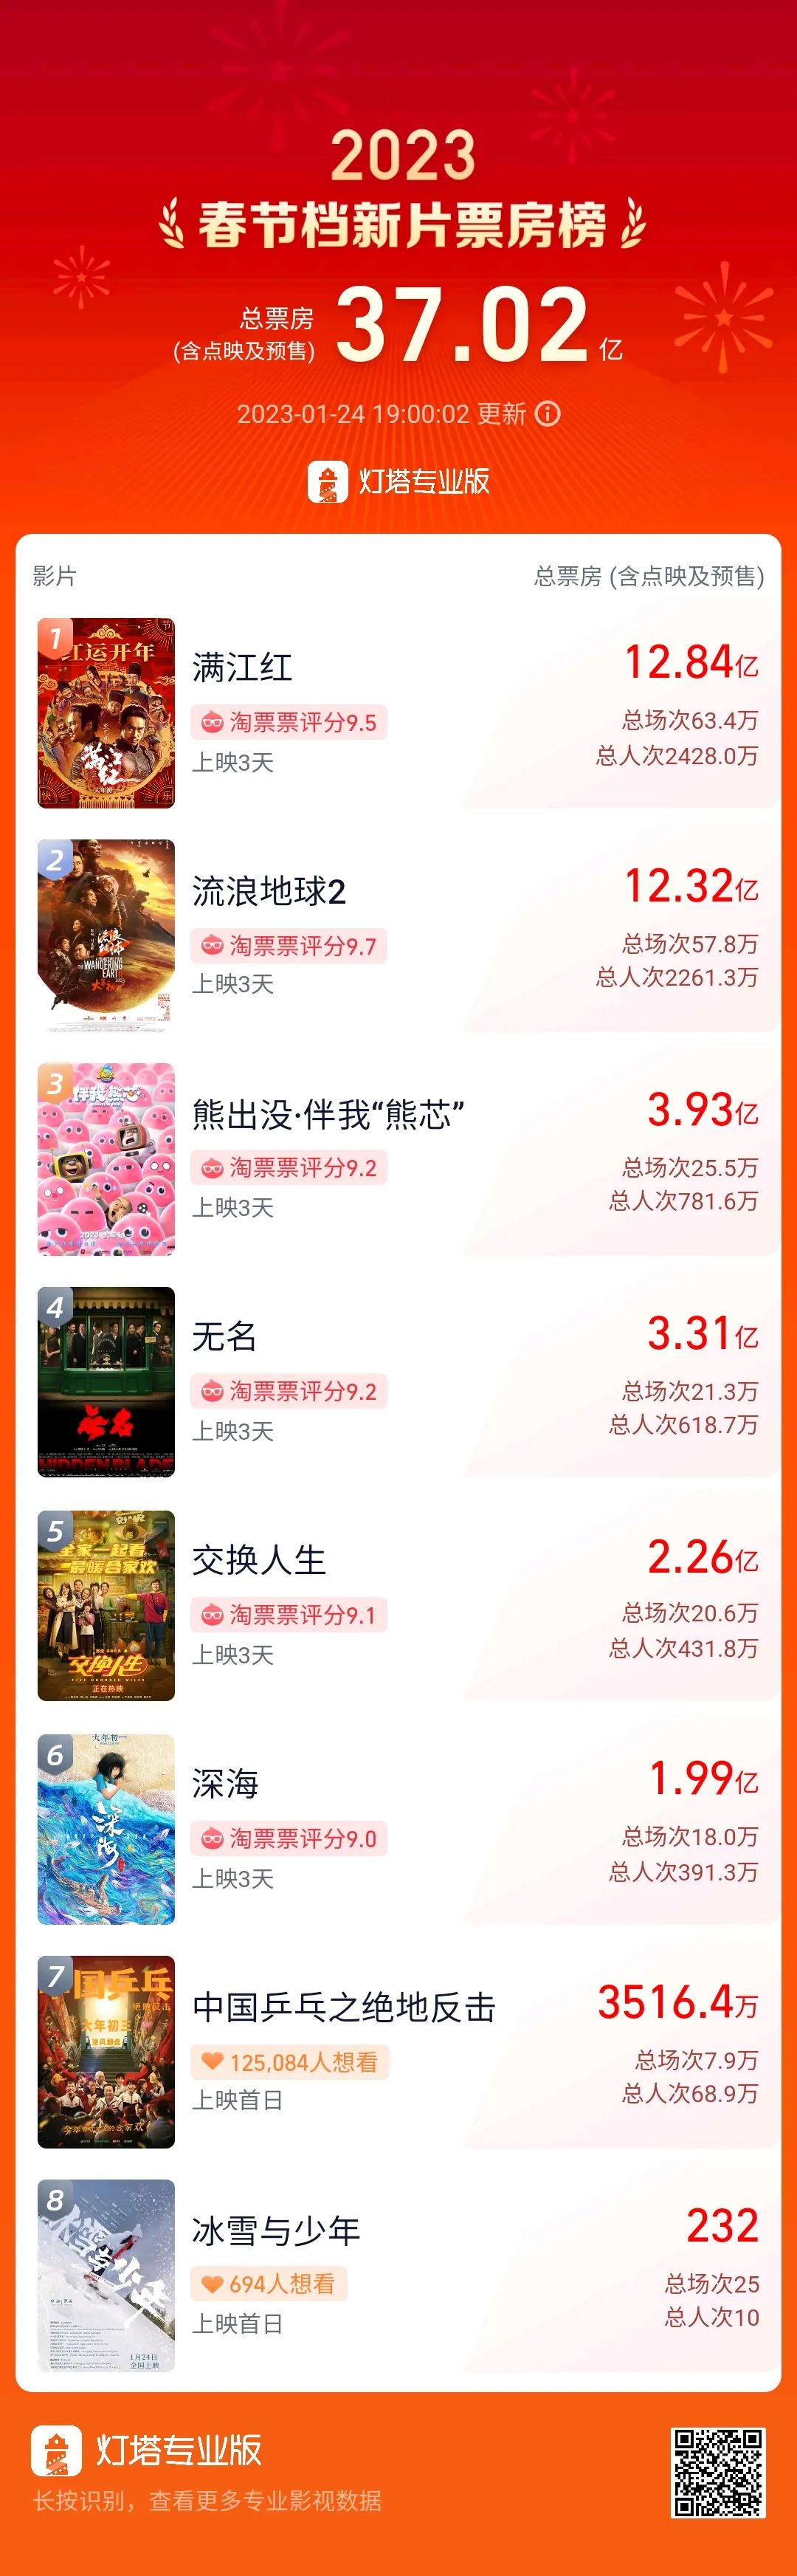 中国电影市场迎来开门红 春节档有3部影片票房均破2亿